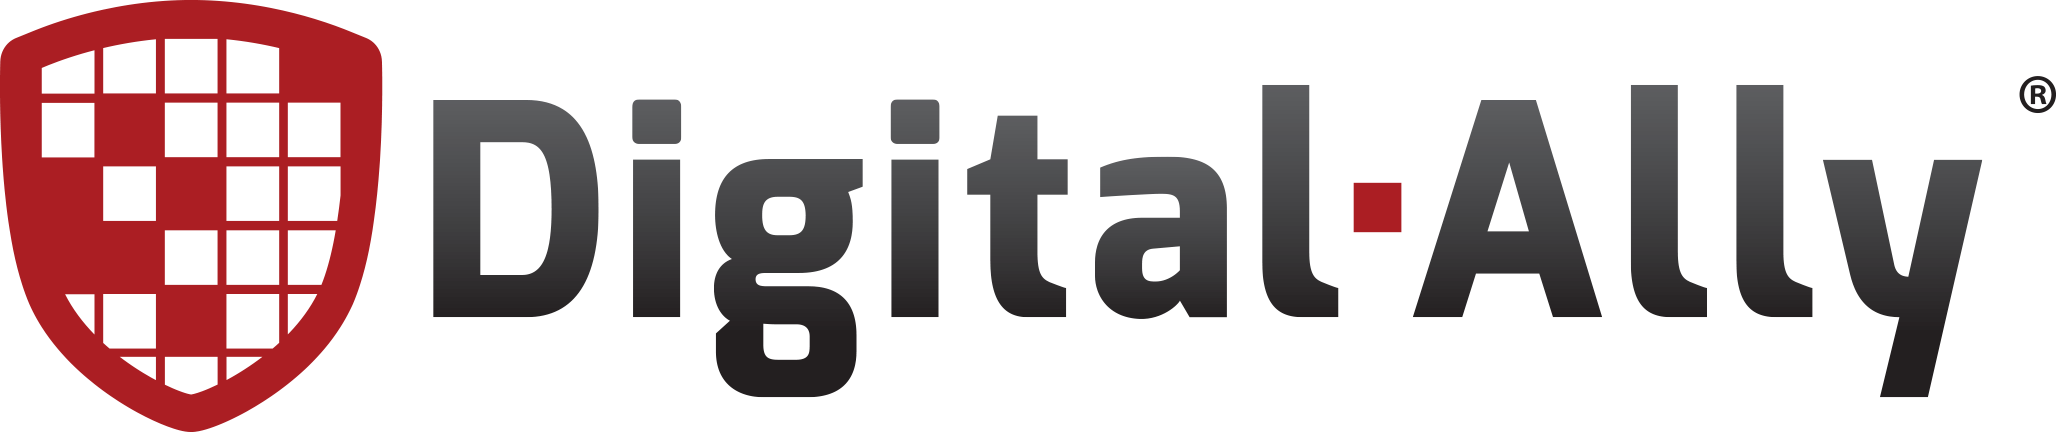 Digital Ally logo large (transparent PNG)